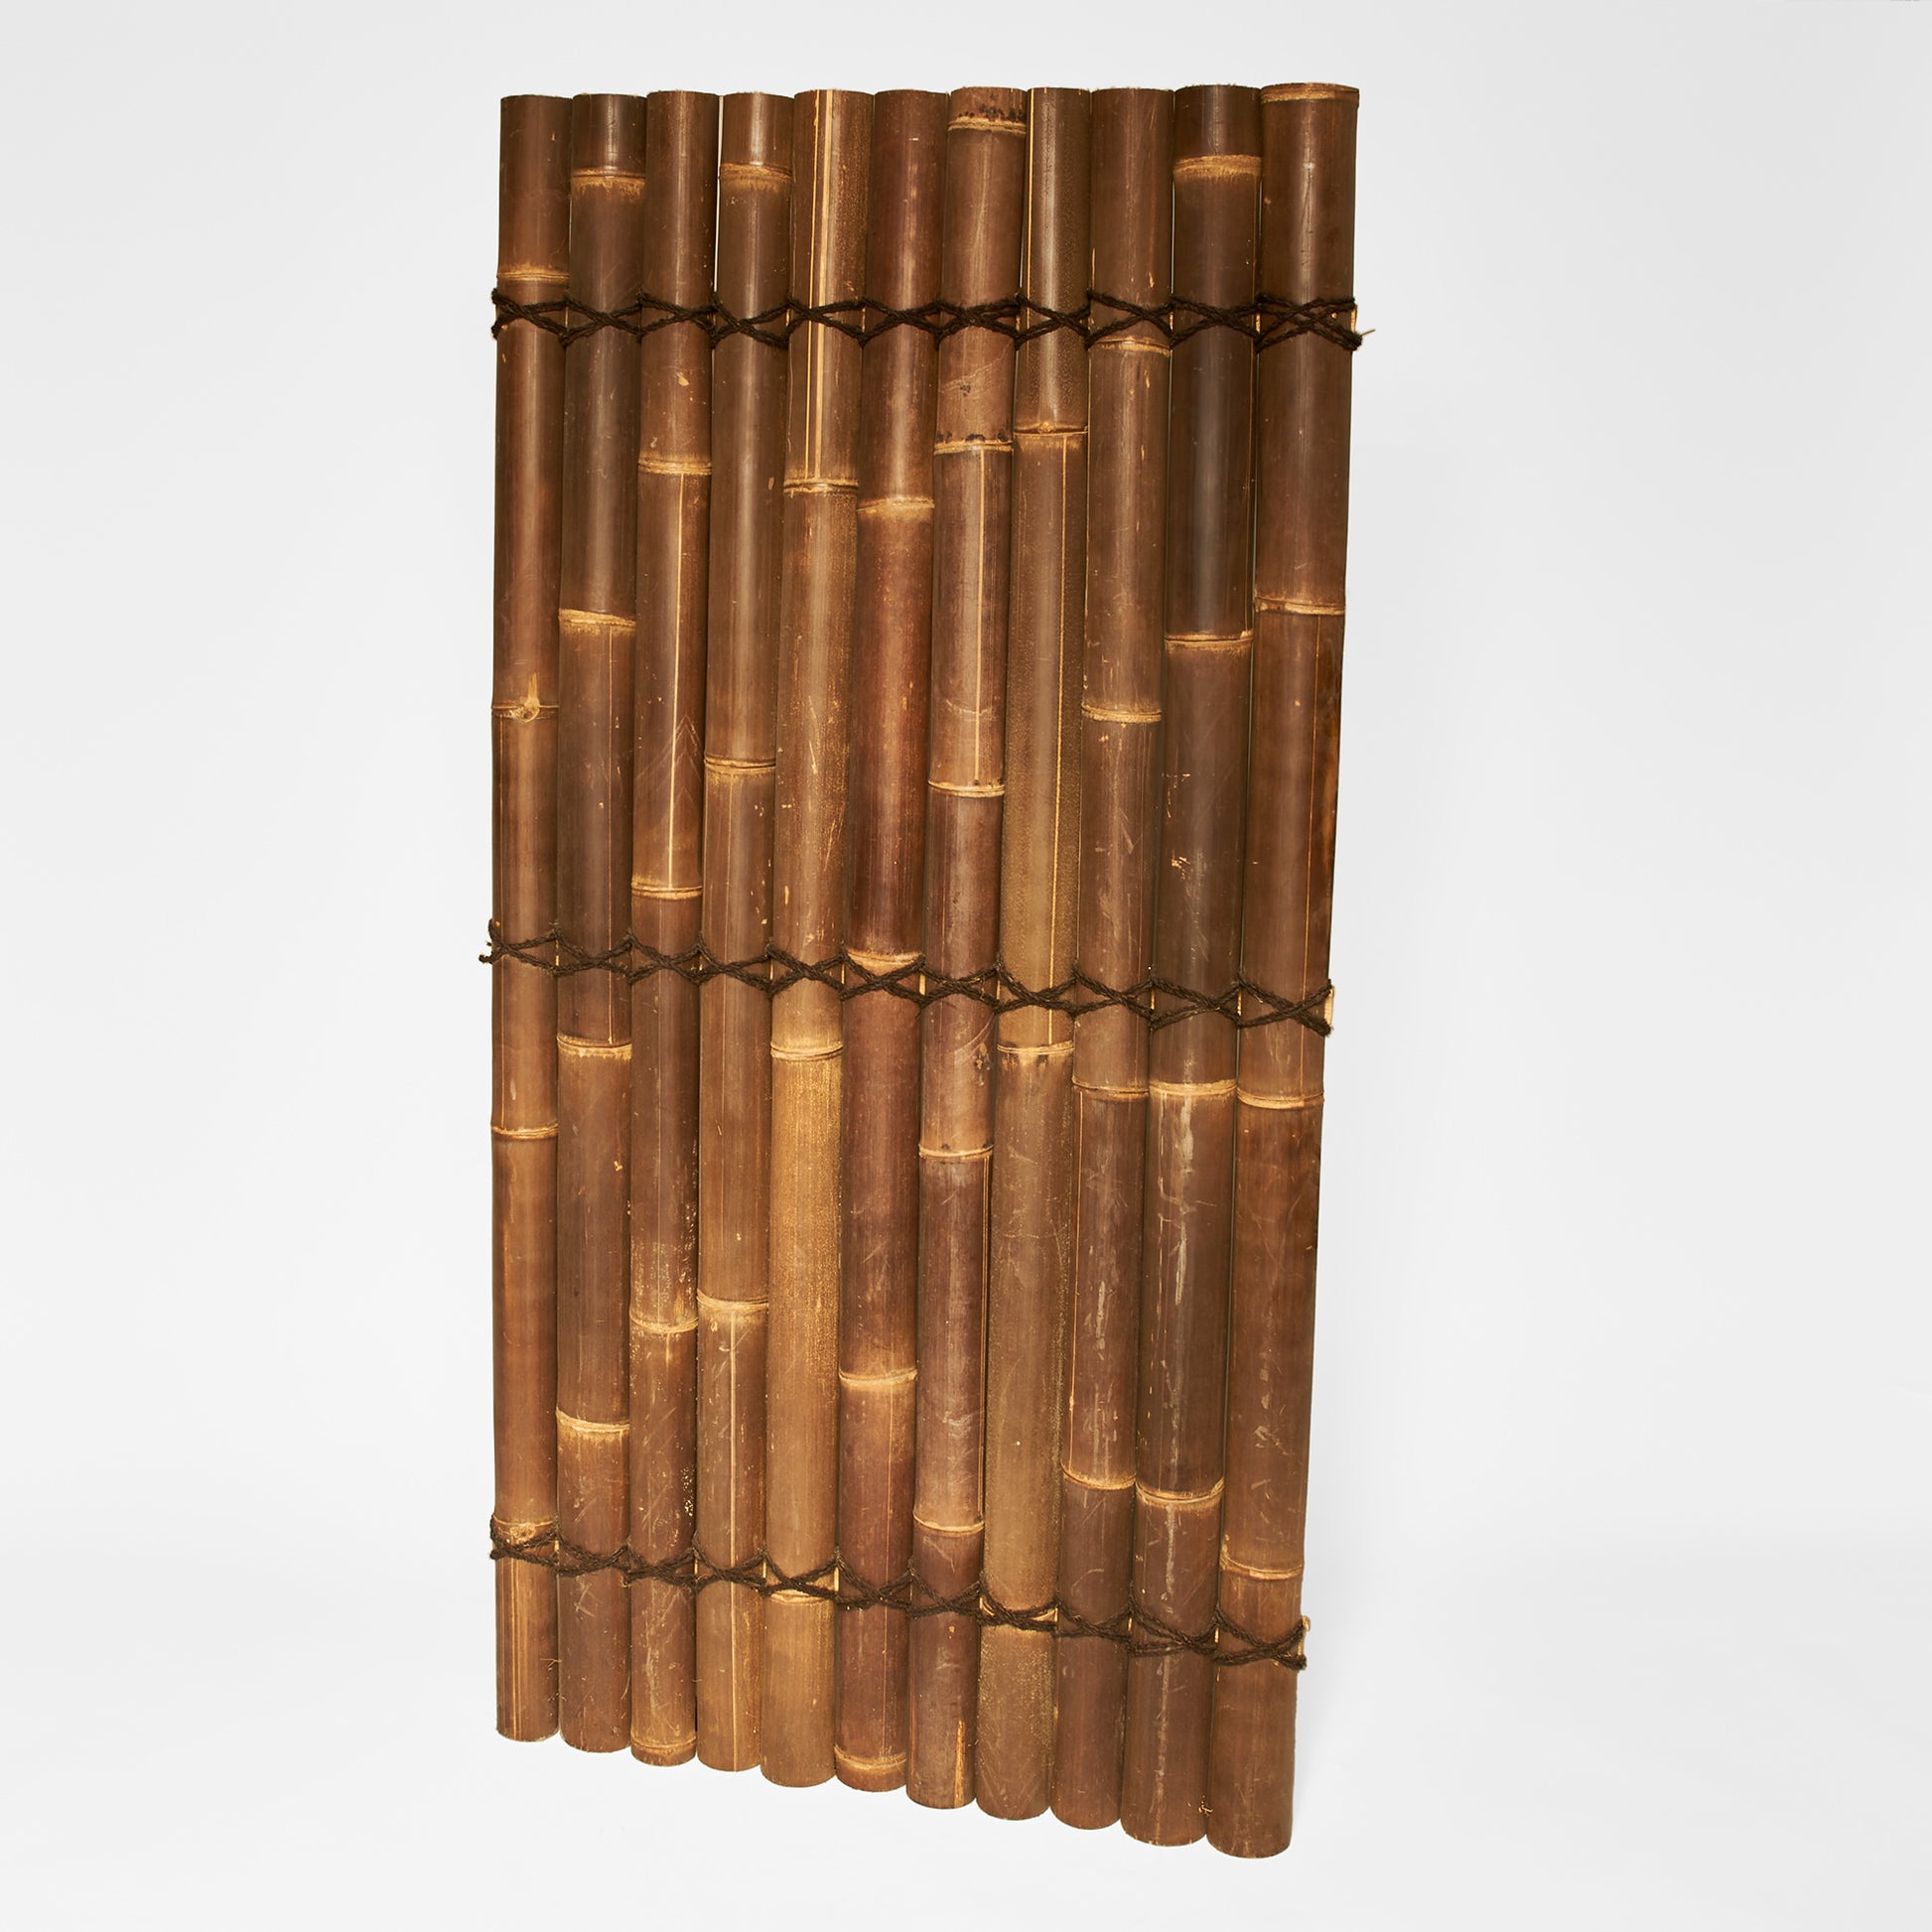 Sichtschutz oder Wandverkleidung aus halben braunen Bambusrohren mit Kokosschnürung als Dekoration - Produktfoto von vorne